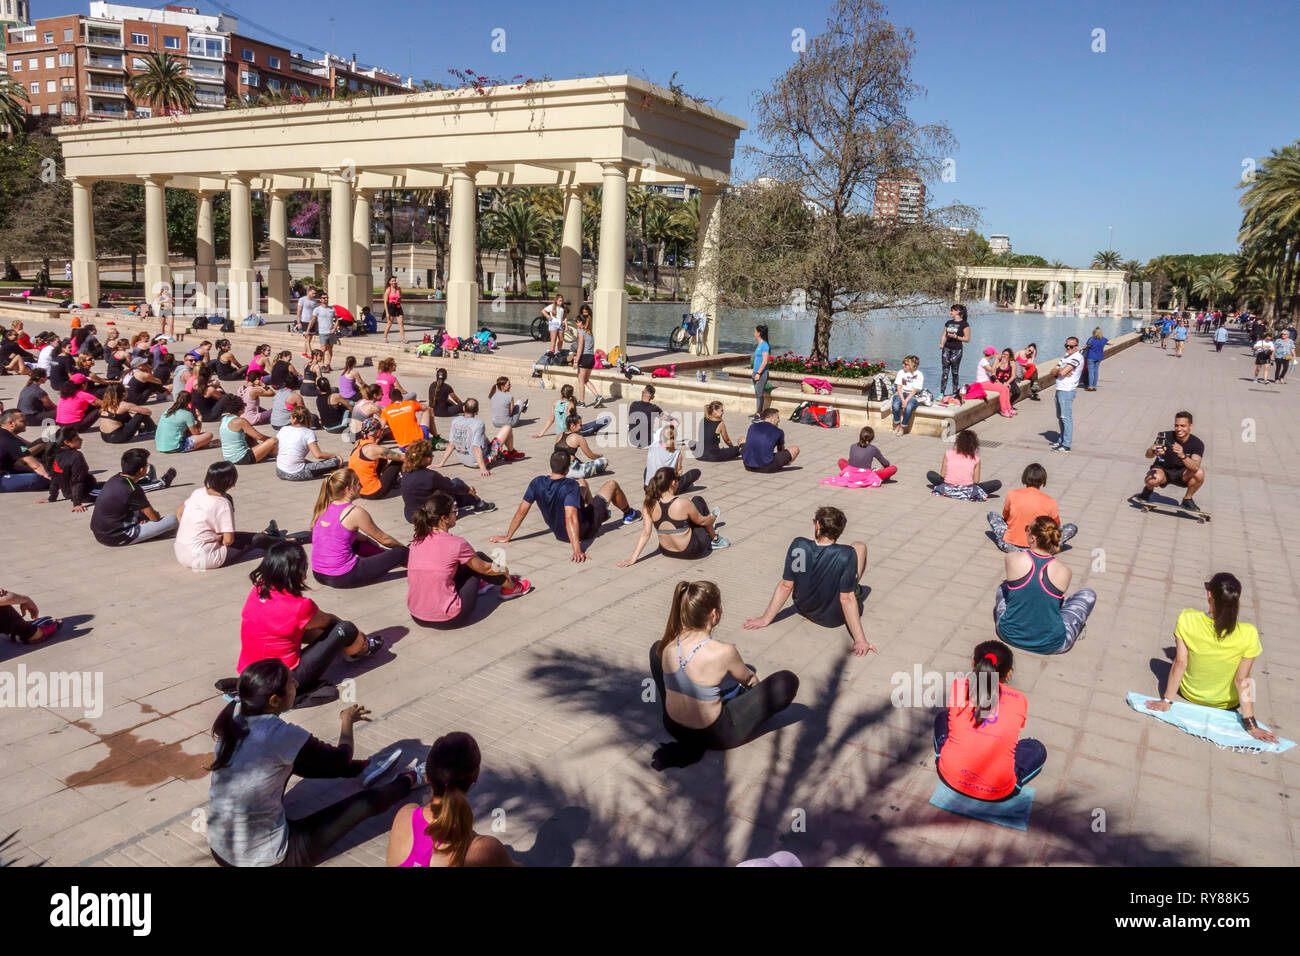 Des foules de personnes exercent leur corps à l'extérieur dans le parc Turia, en face du Palais de la musique, Valence Espagne personnes actives Banque D'Images